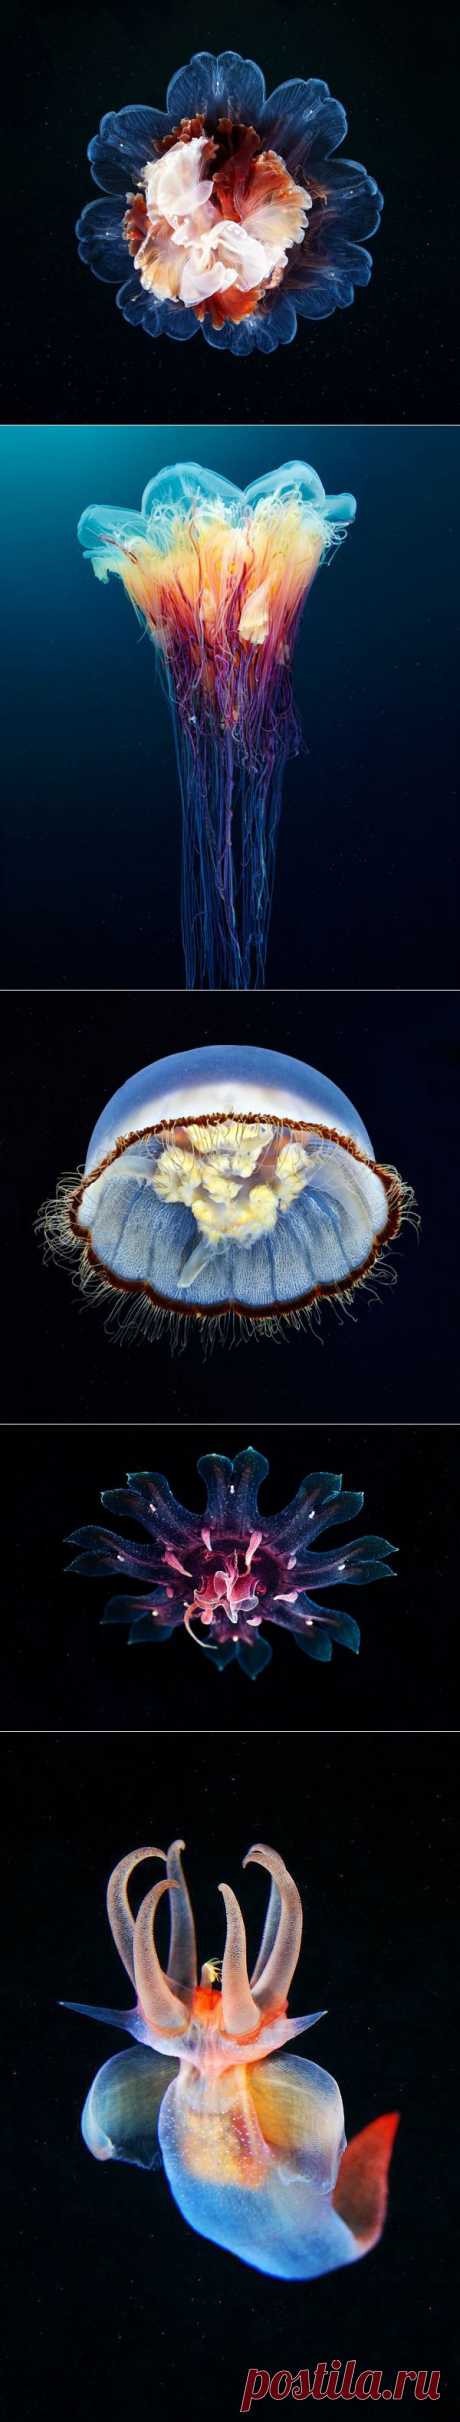 Восхитительный подводный мир . Эти фотографии морского биолога Александра Семенова облетели весь мир. В одной из экспедиций он снял редкие виды медуз, часть из которых ранее не попадалась на глаза ученым.